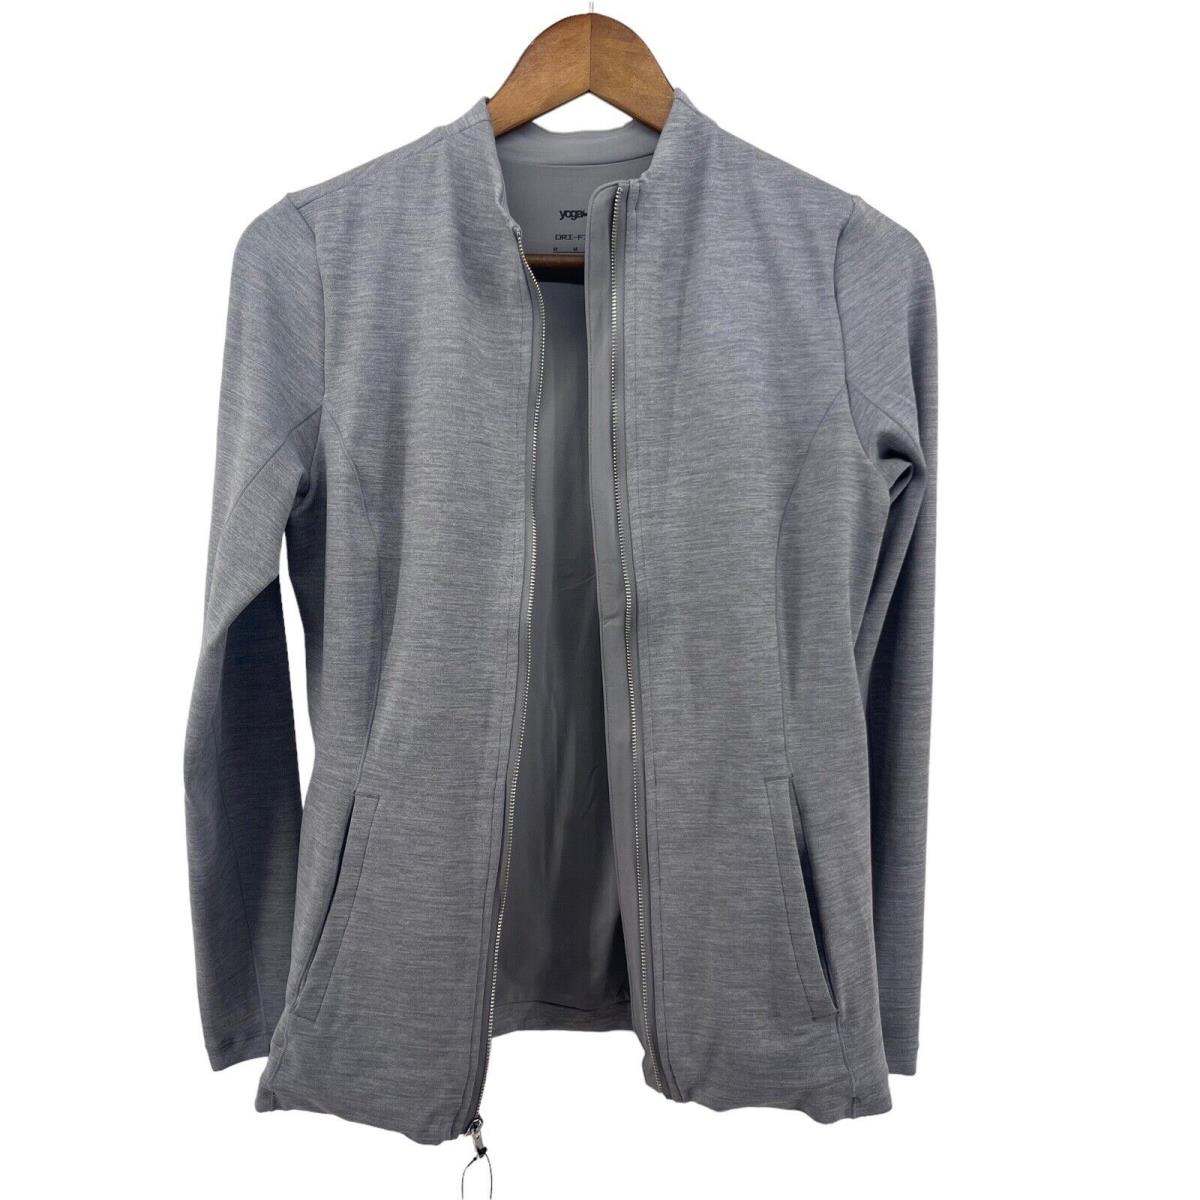 Nike Yoga Jacket Womens Medium Grey Luxe Dri-fit Full Zip Tight Fit DD5533